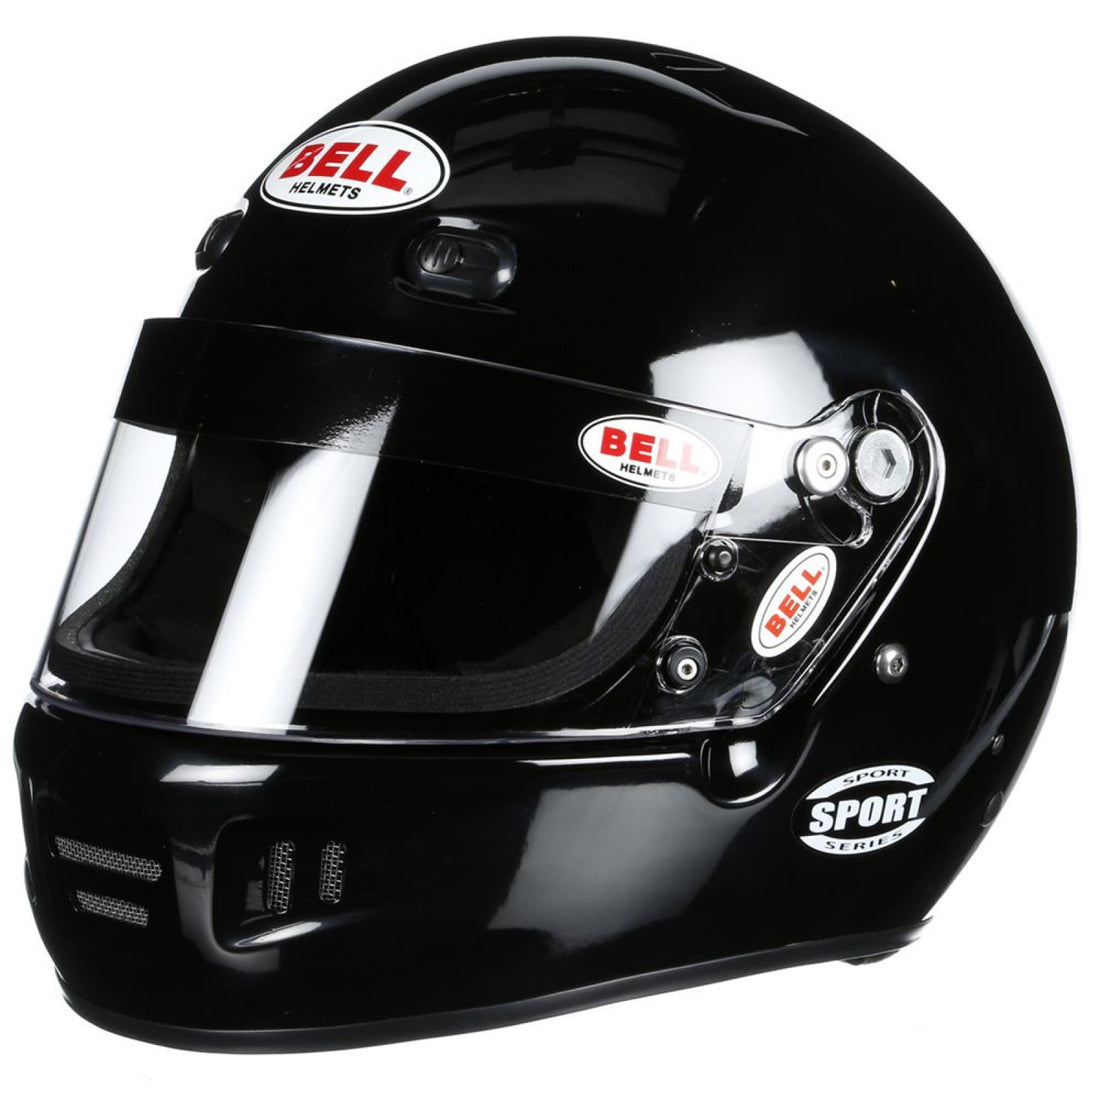 Bell K1 Sport Black Helmet X Large (61+)